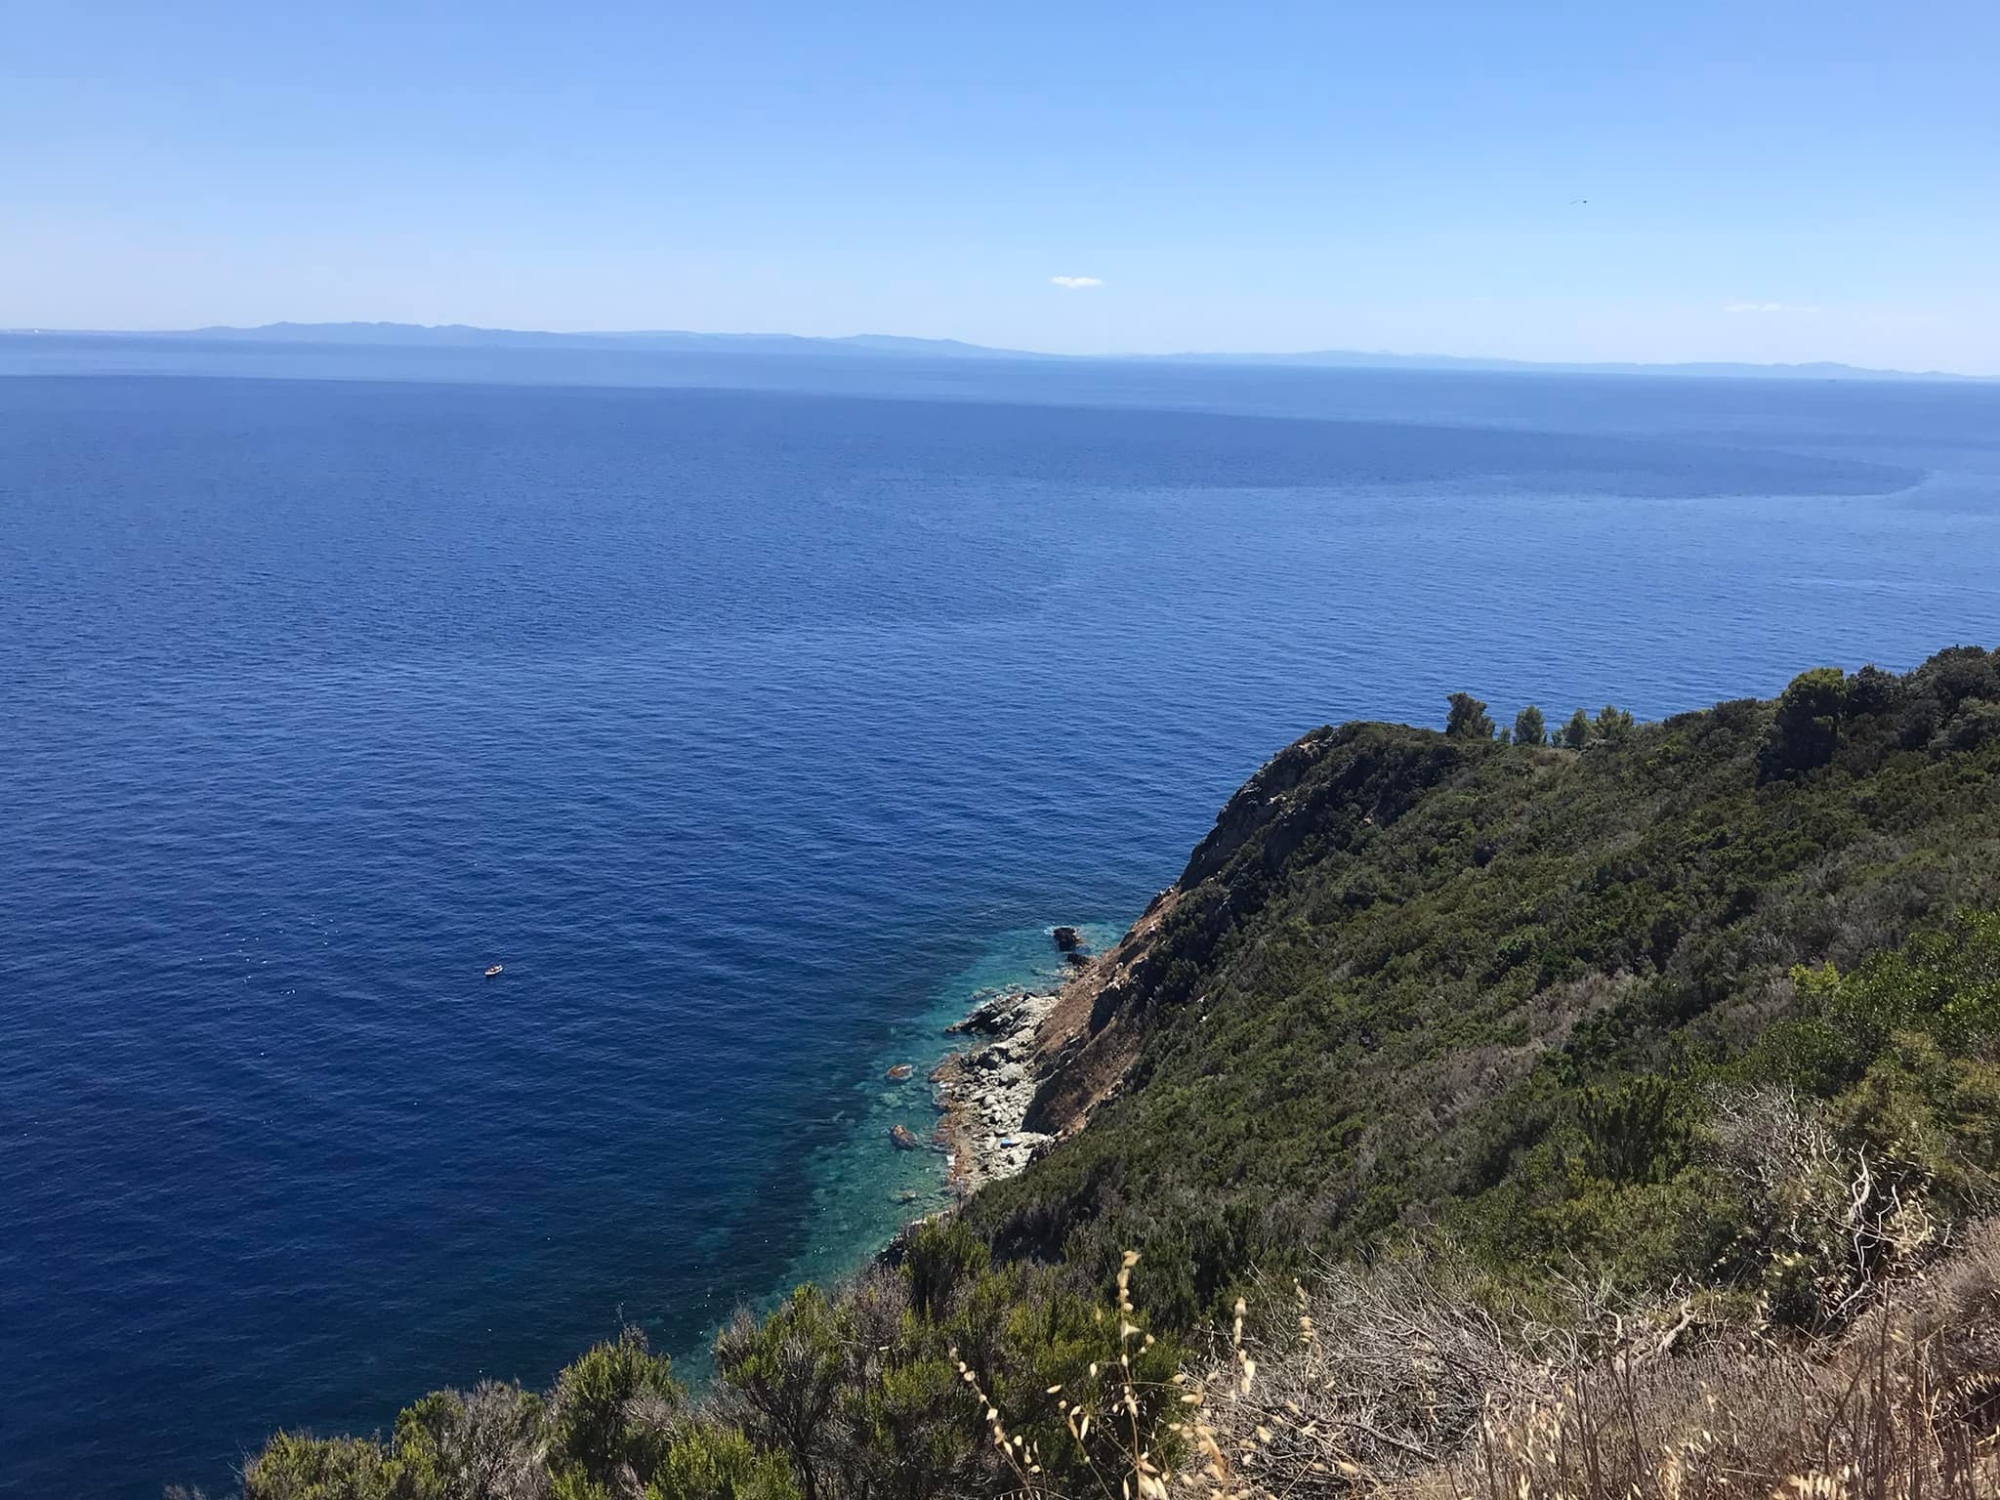 Escursione all'isola di Gorgona, l'isola più esclusiva e tutelata dell’Arcipelago Toscano